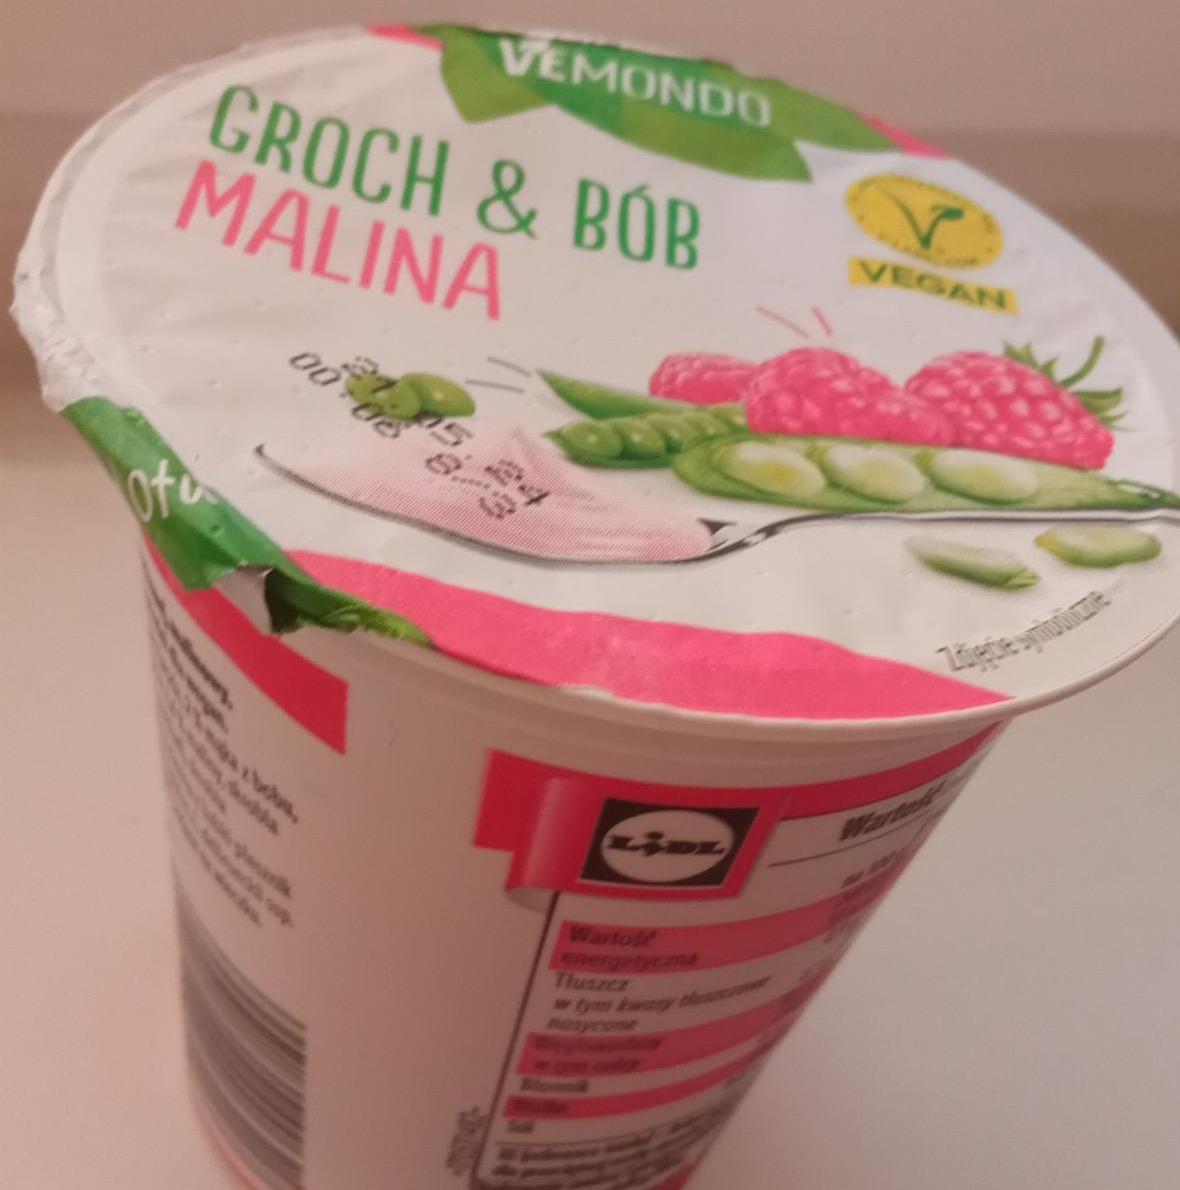 Zdjęcia - Wegański jogurt groch, bób i malina Vemondo